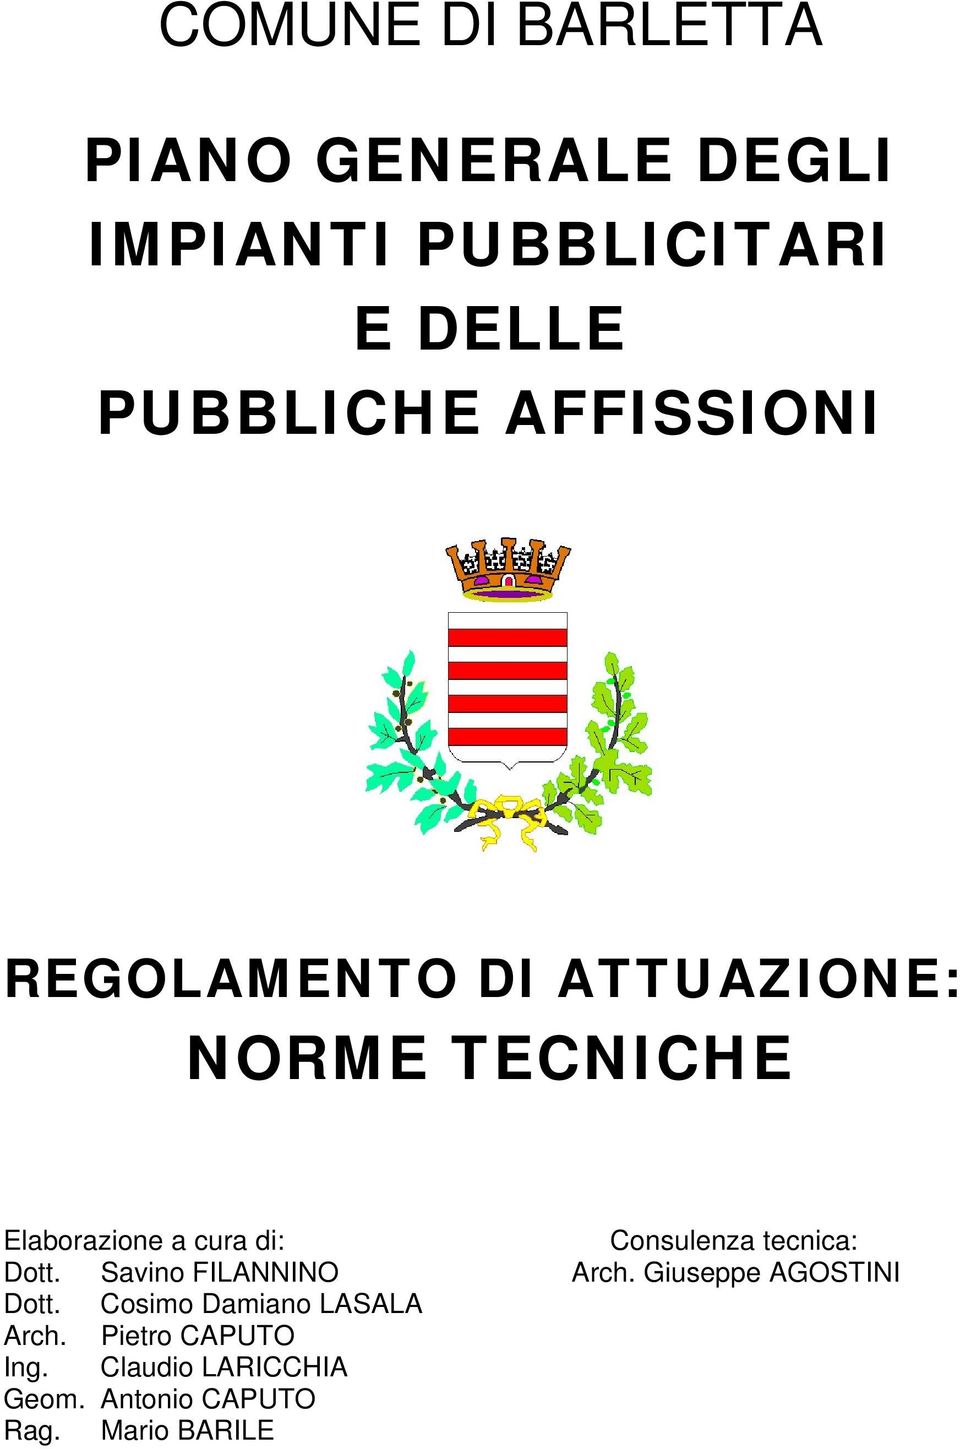 Consulenza tecnica: Dott. Savino FILANNINO Arch. Giuseppe AGOSTINI Dott.